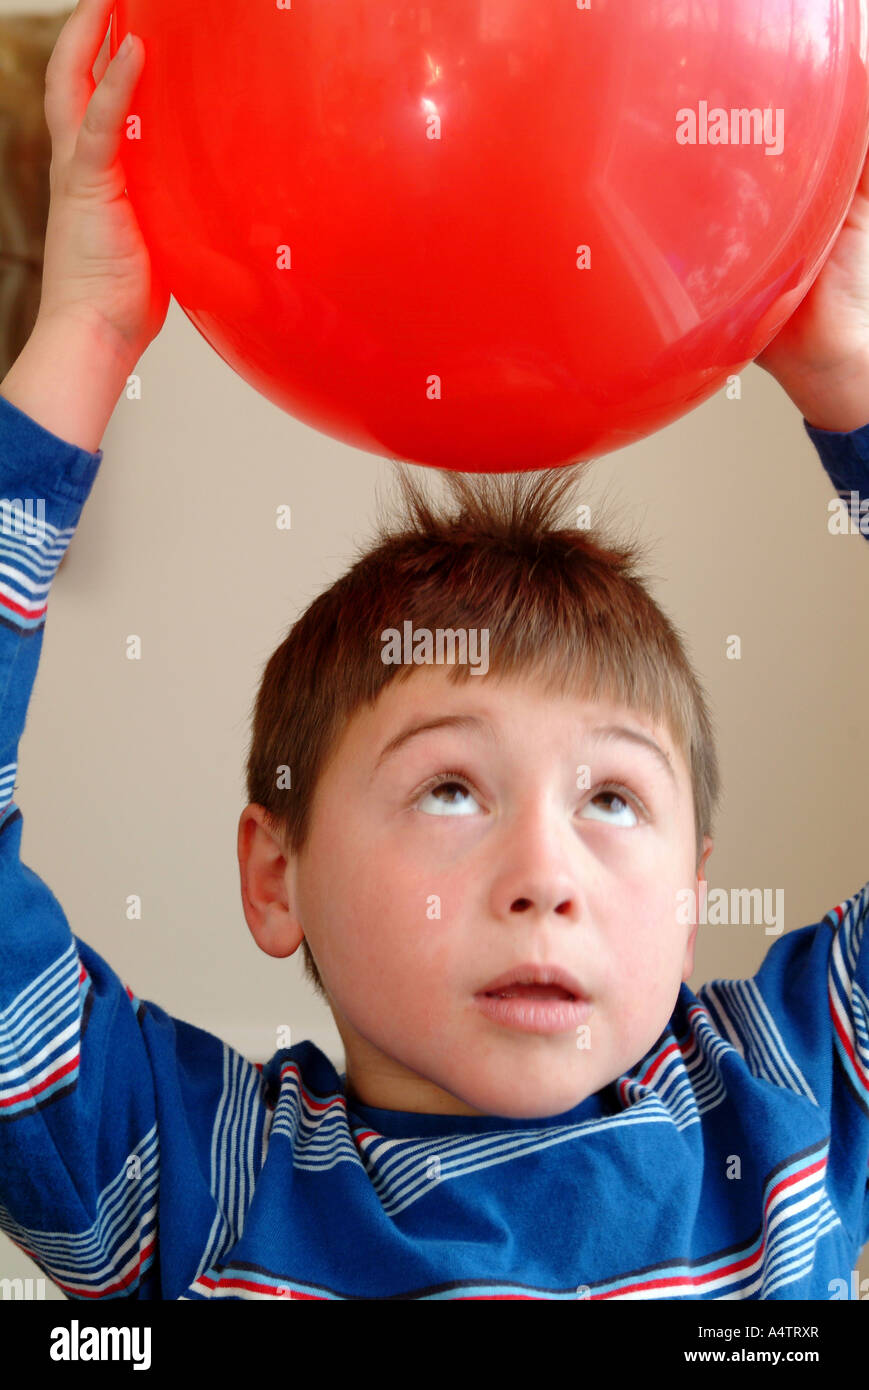 Ein 7 Jahre alter Junge hält einen roten Ballon über seinen Kopf und statische Elektrizität zieht seine Haare in Richtung der Ballon Stockfoto